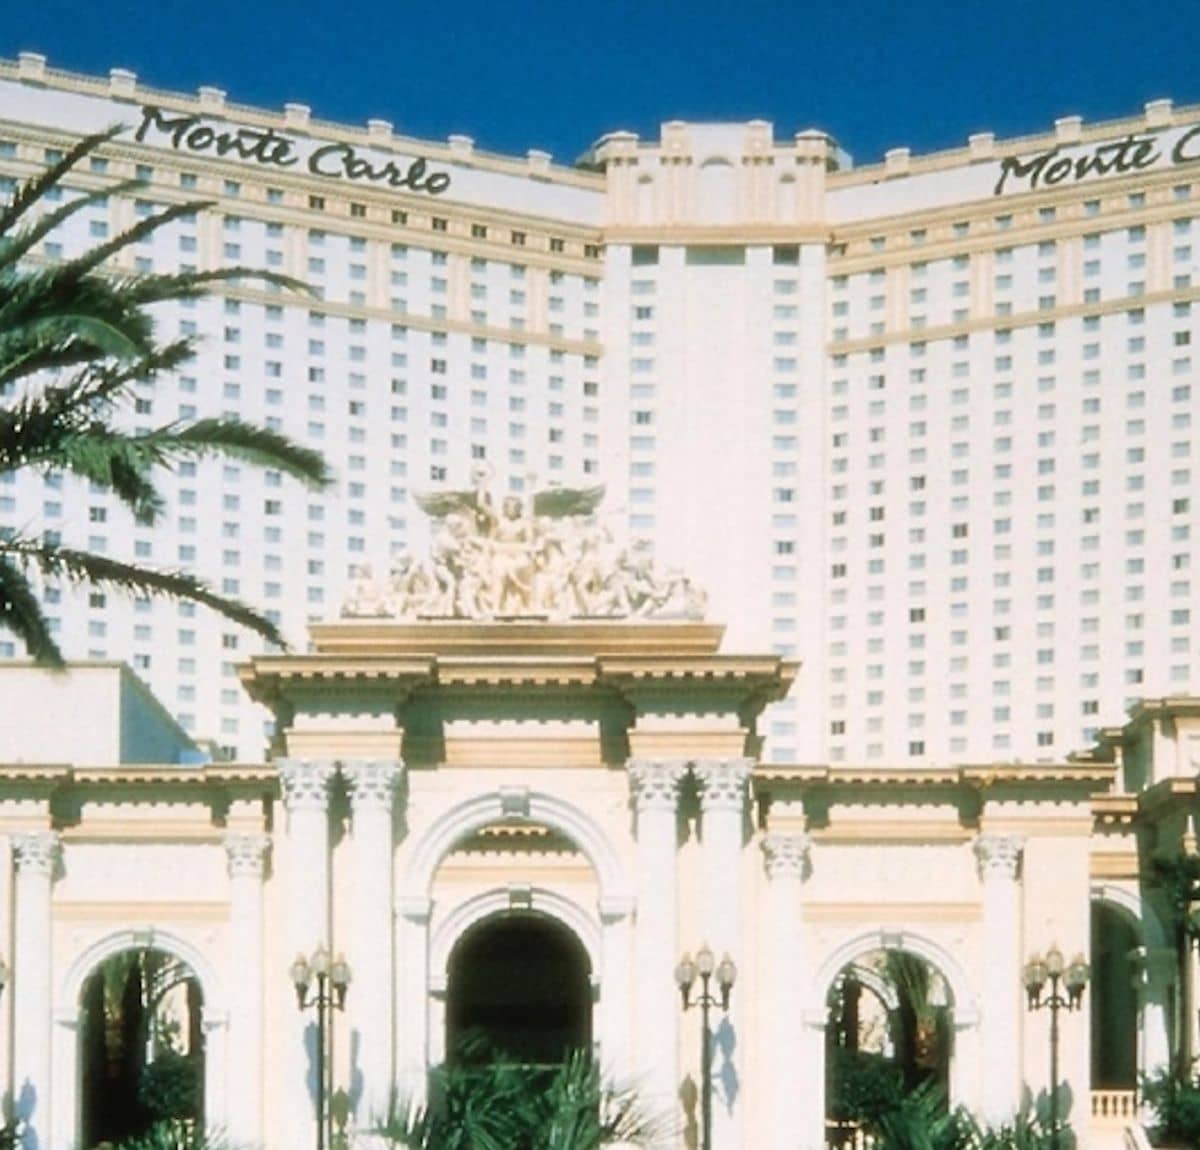 Monte Carlo website